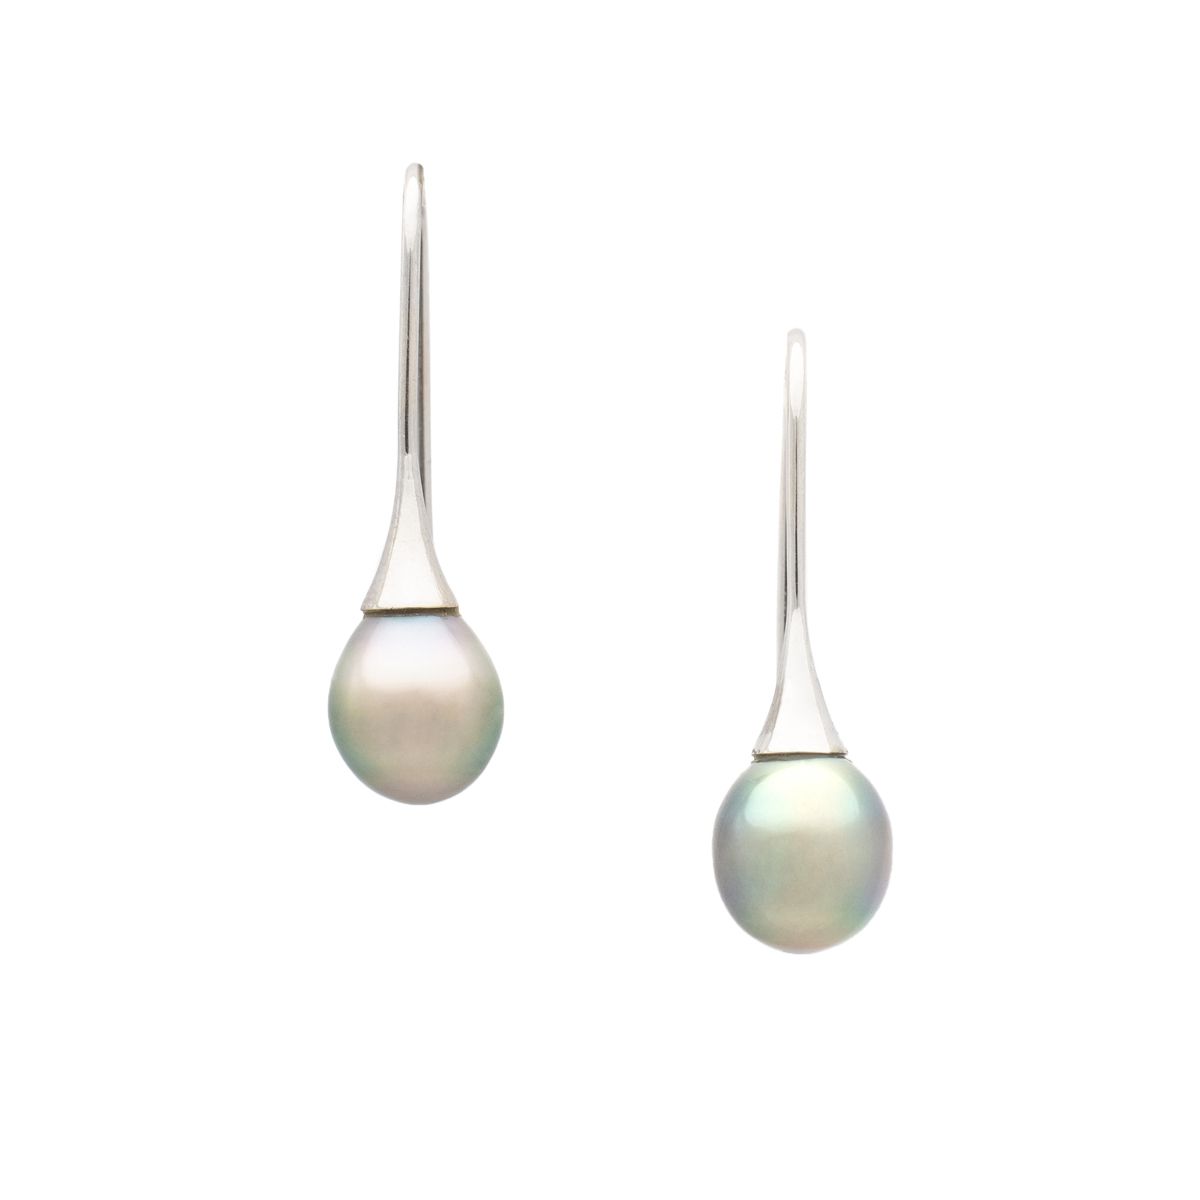 Null 18K白金耳环，配水滴形珍珠

珍珠的高度：11毫米

总长度：32毫米

毛重：4,59 g